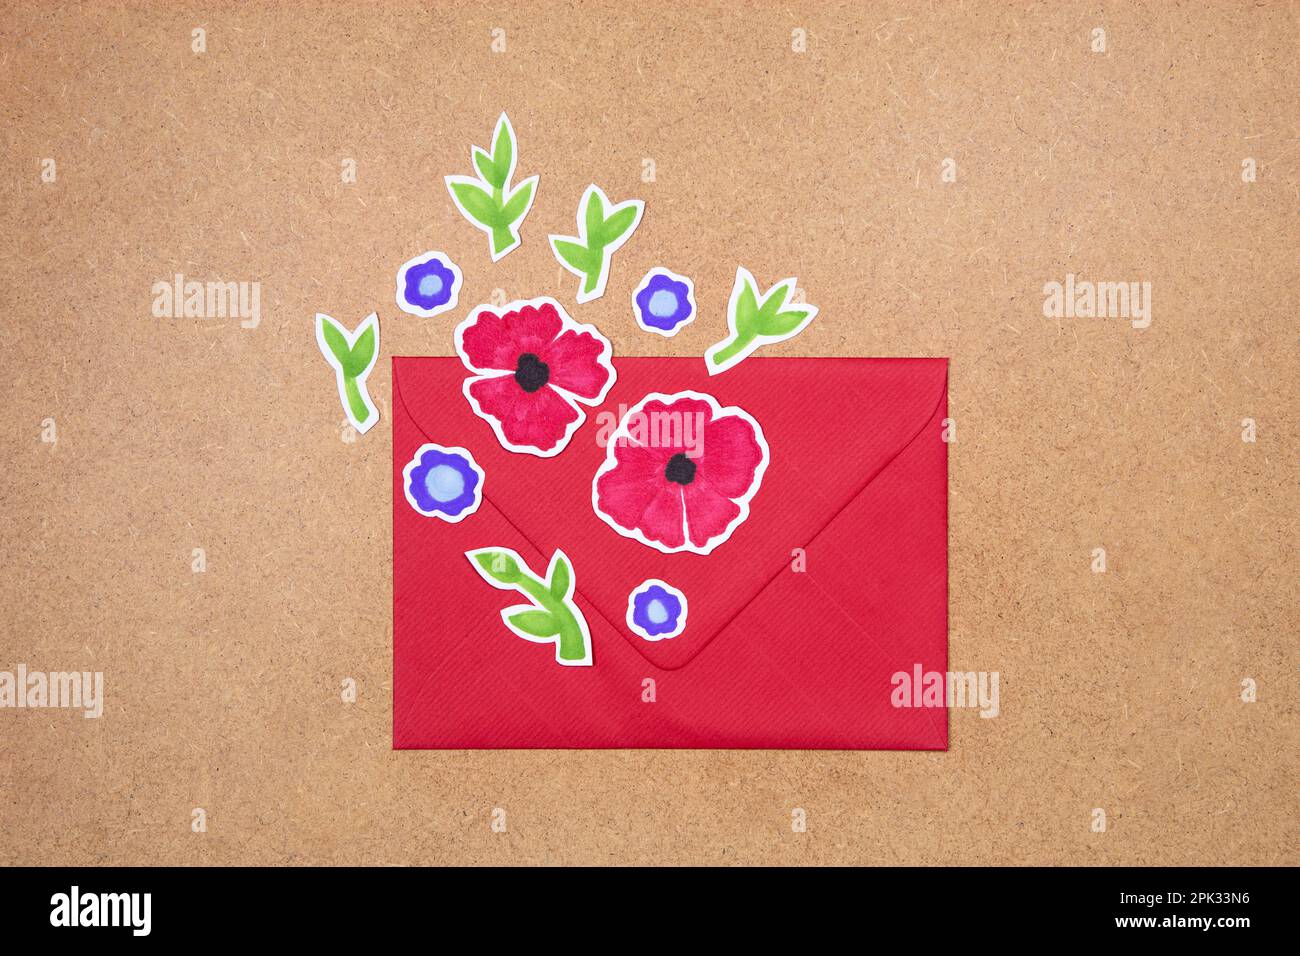 Enveloppe rouge avec fleurs dessinées à la main arrangement déco sur fond neutre. Concept de voeux, invitation, carte d'anniversaire de mariage. Banque D'Images